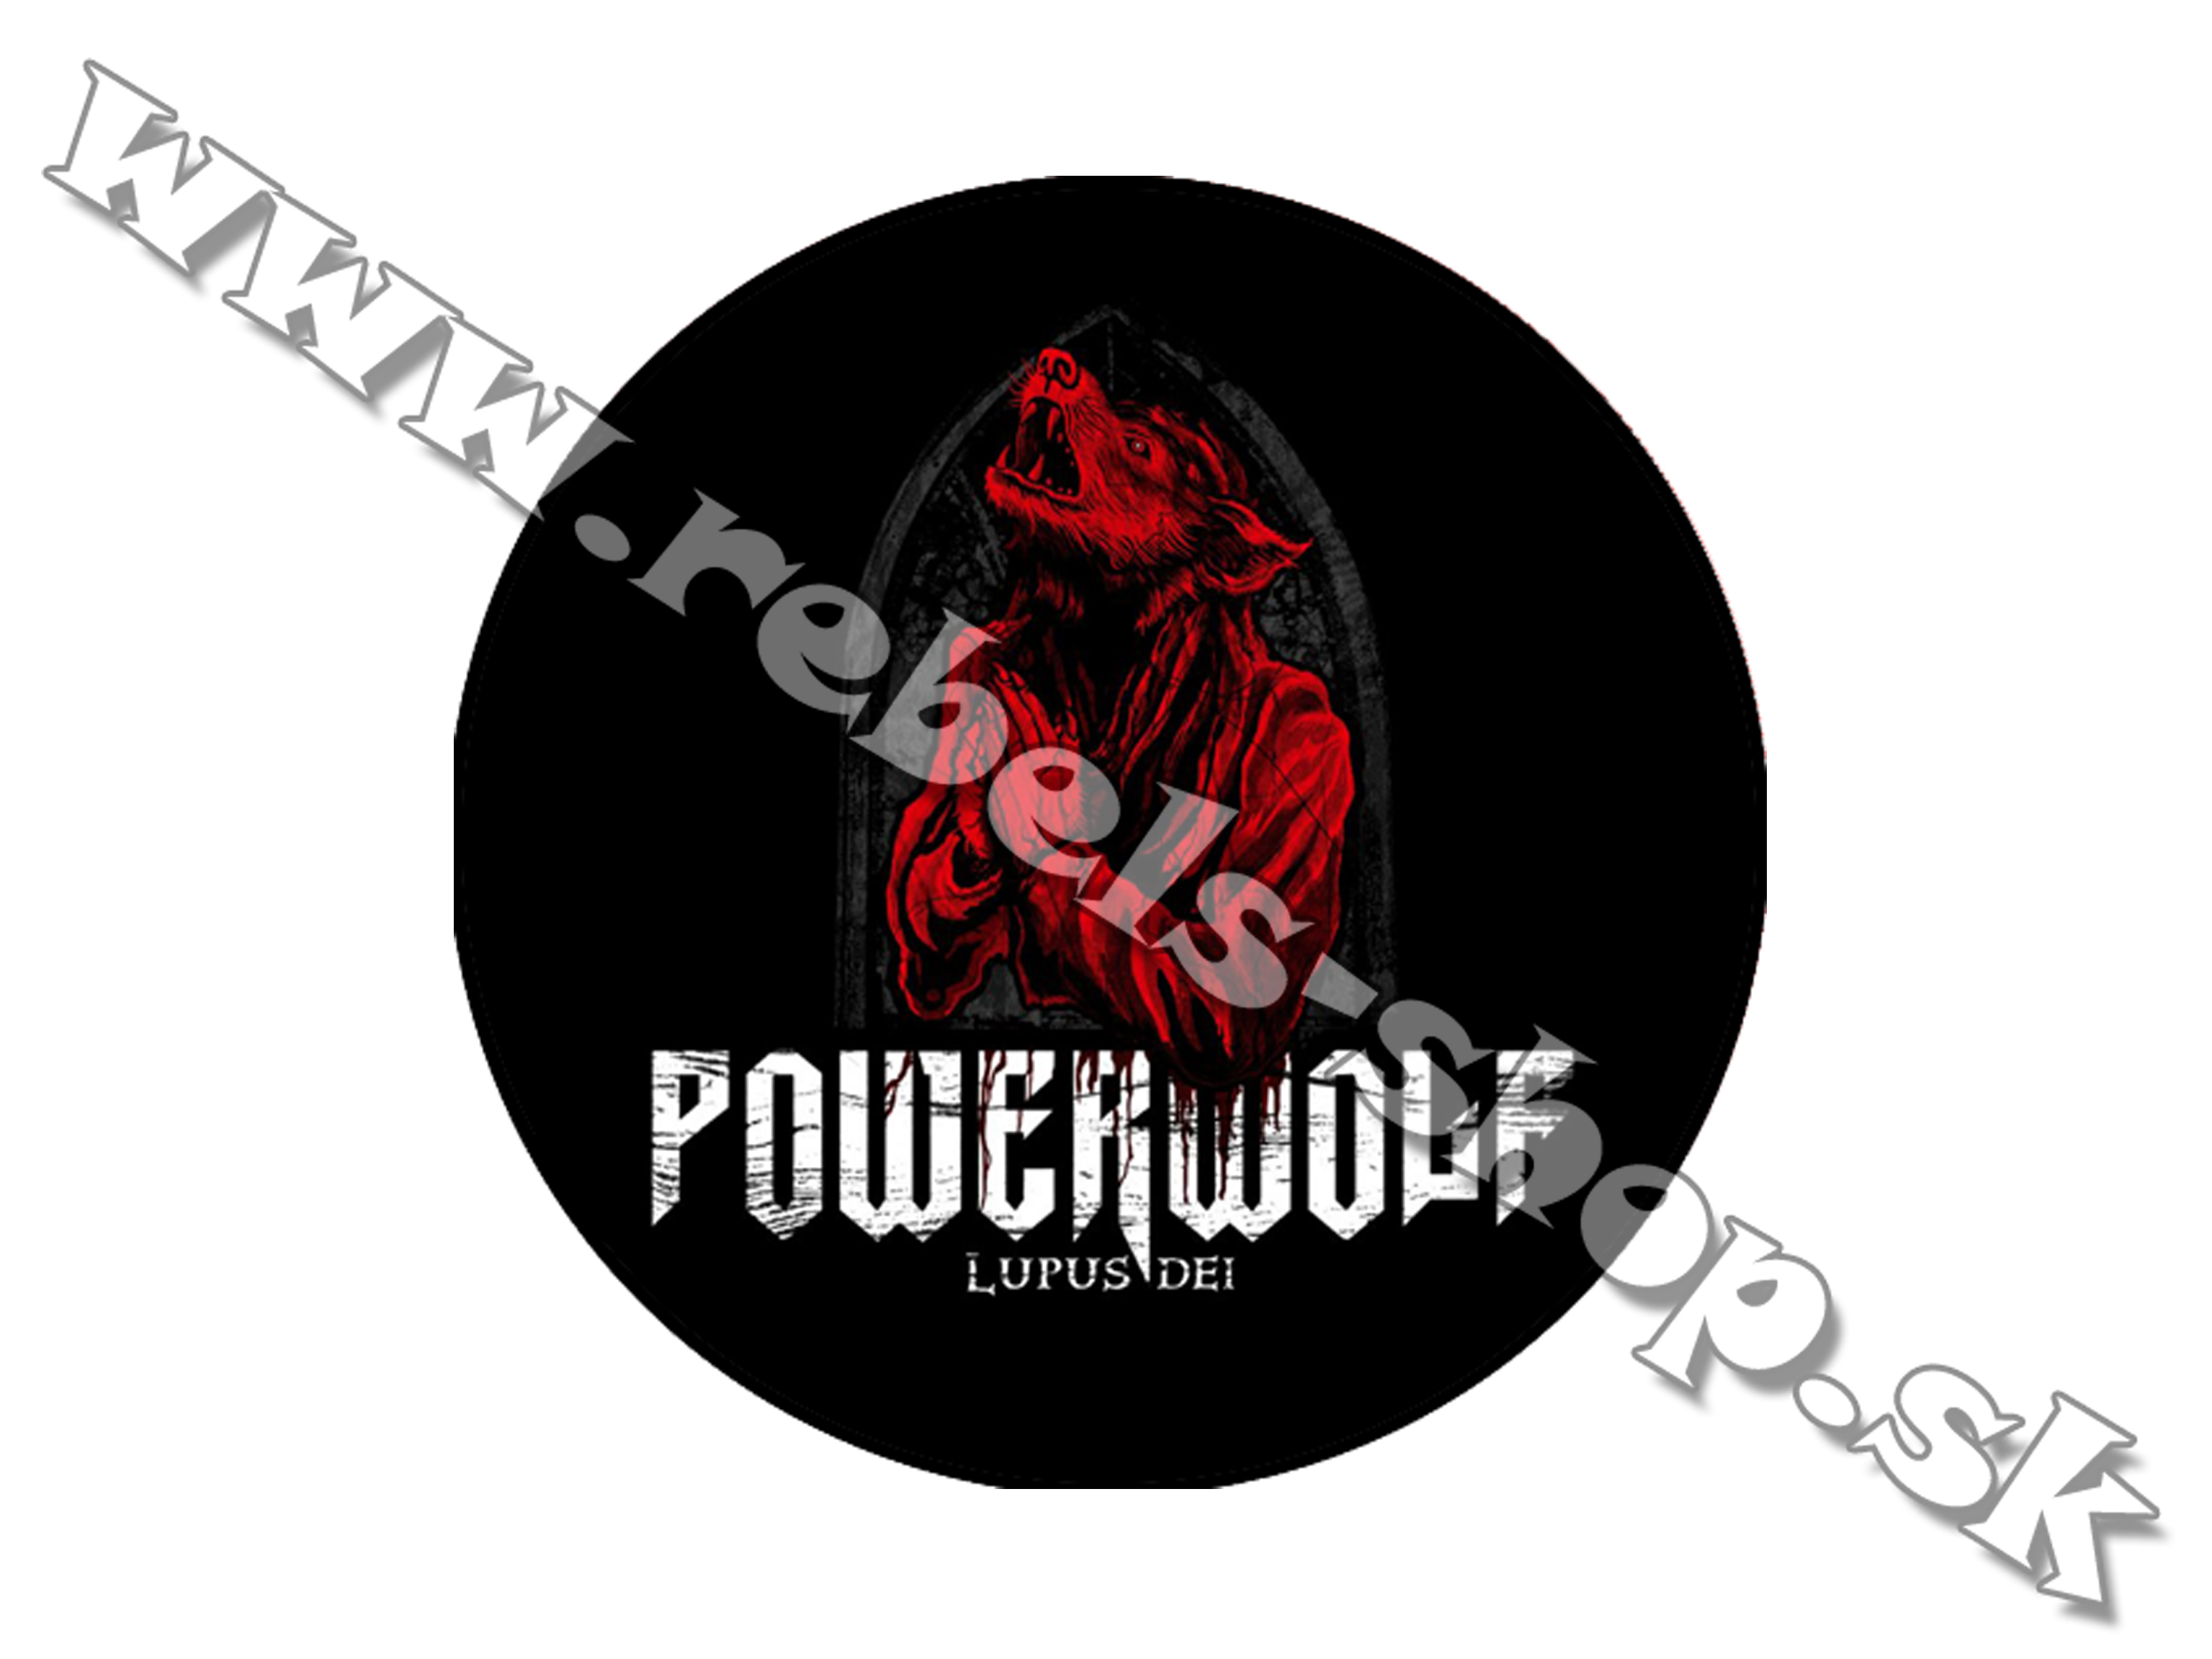 Odznak "Powerwolf"